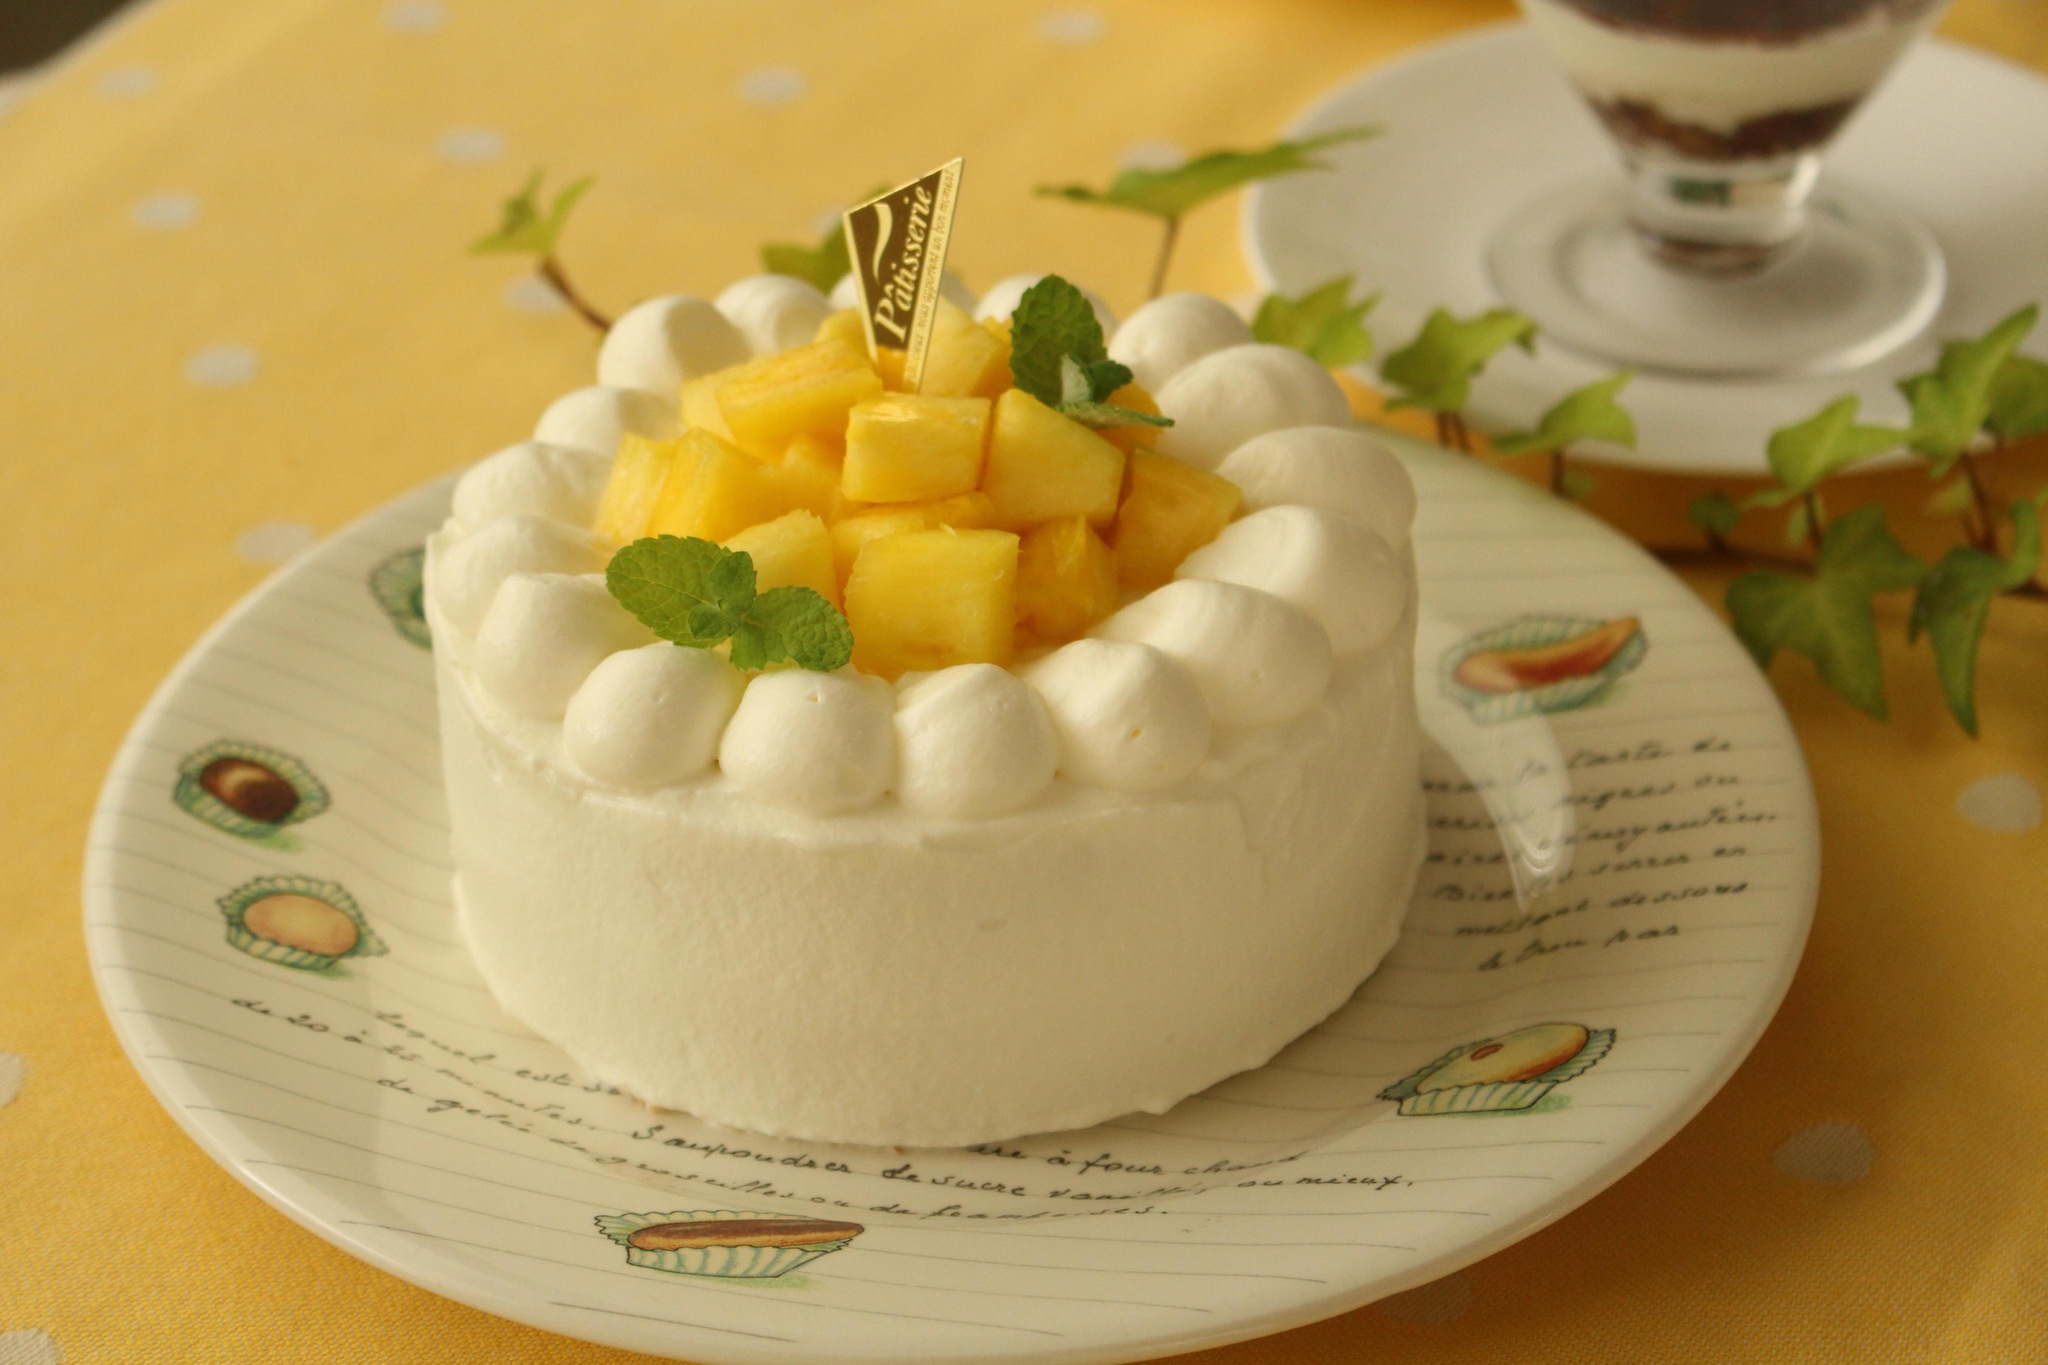 フレッシュパイナップルのショートケーキ 開催 まりこの小さなお菓子教室 東京都多摩市貝取 の21年3月レッスン情報 料理教室検索サイト クスパ